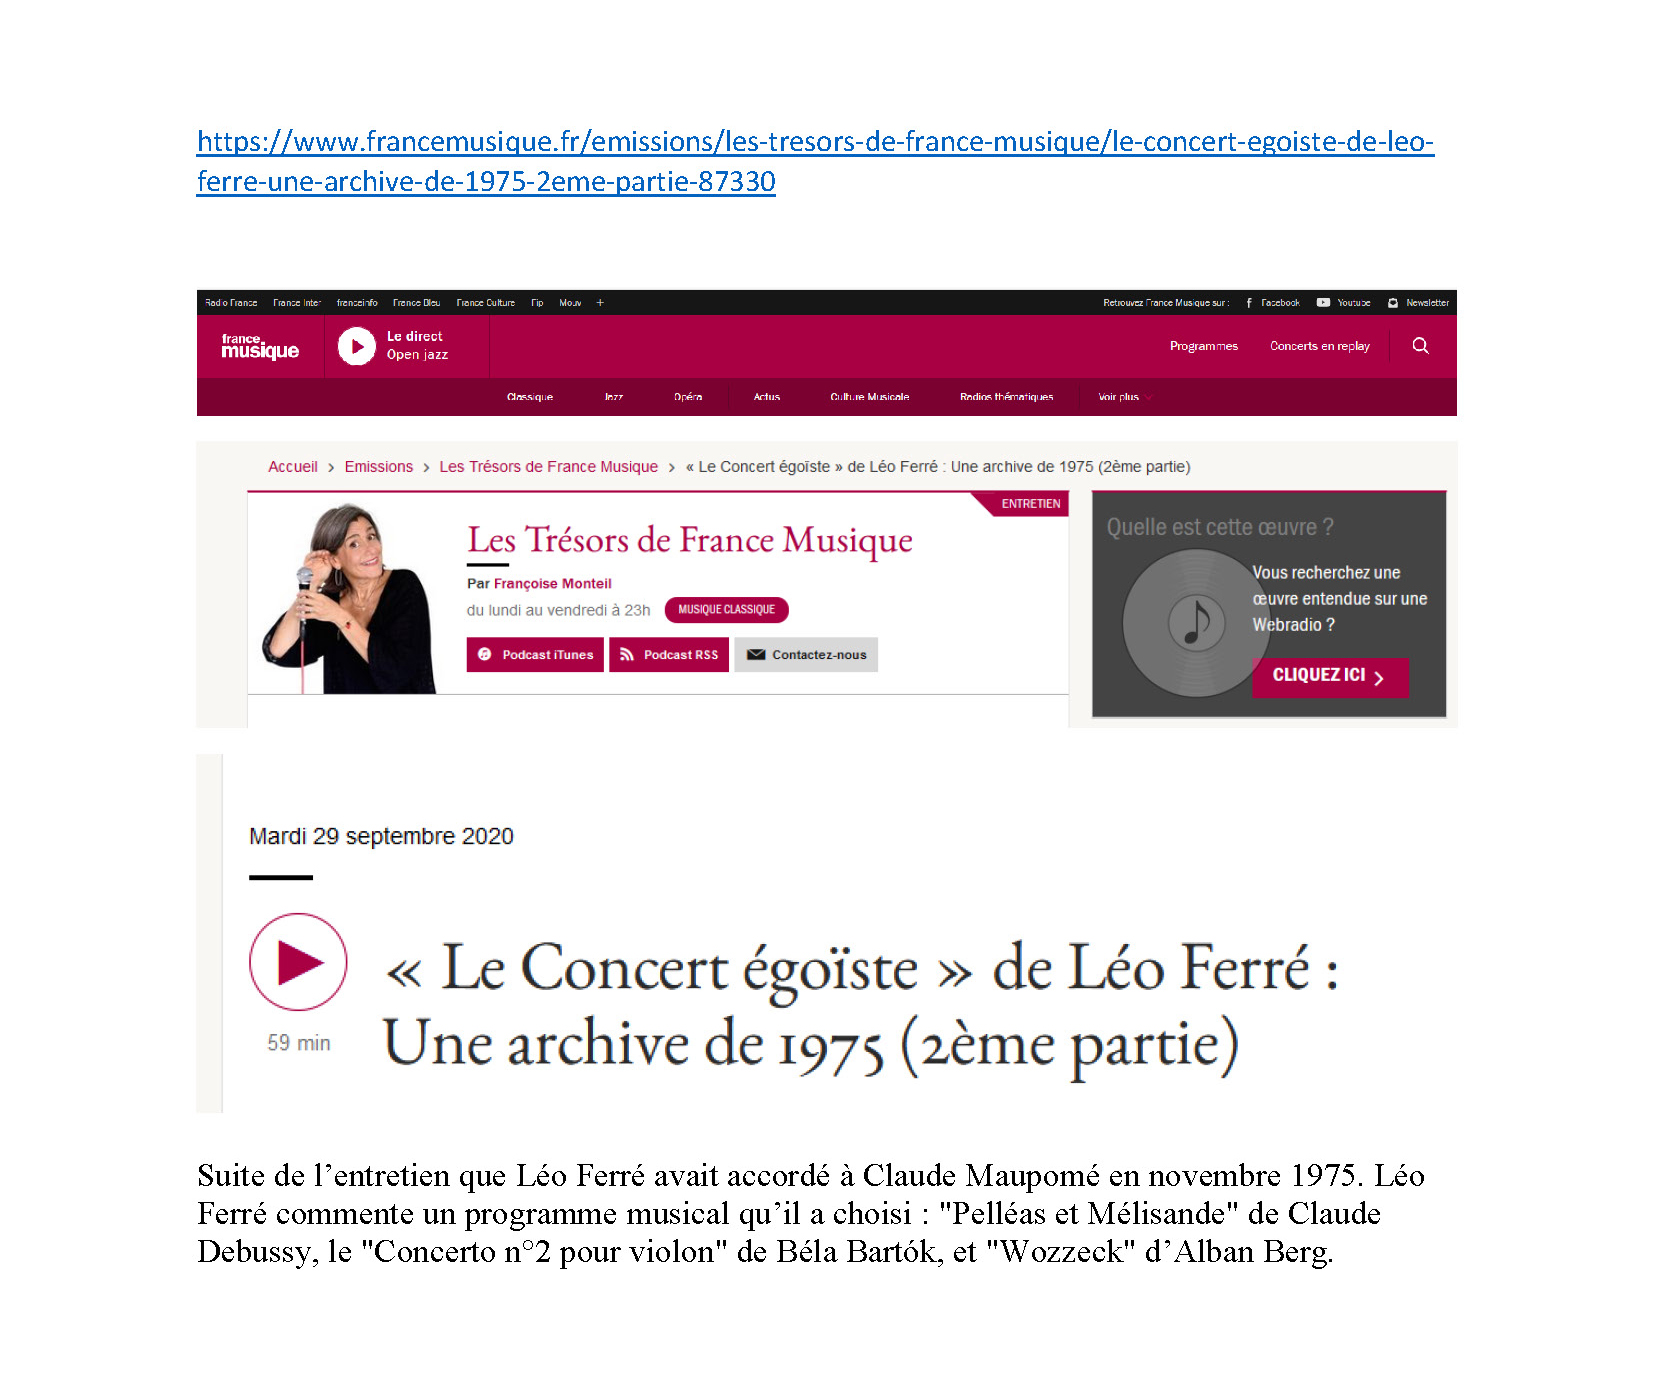 29/09/2020 Les trésors de france musique le concert égoïste Léo Ferré 2ème partie